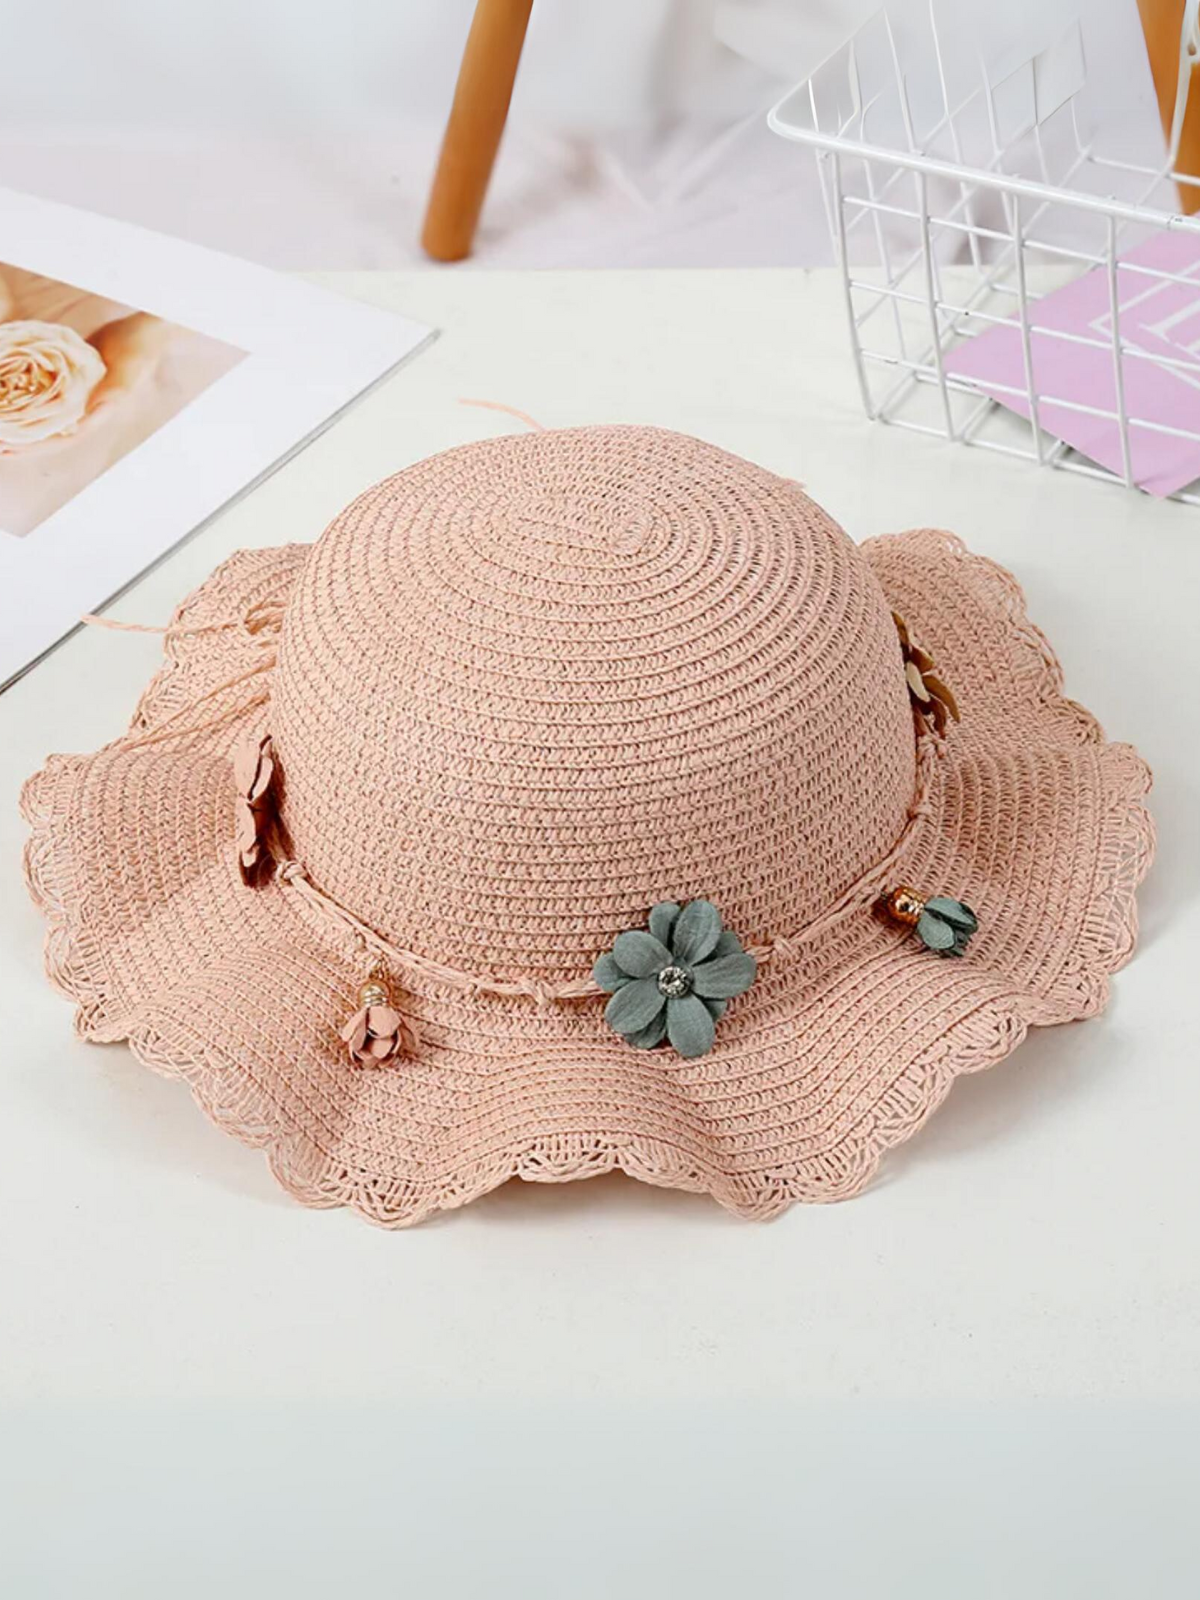 Mia Belle Girls Floral Straw Hat | Girls Accessories